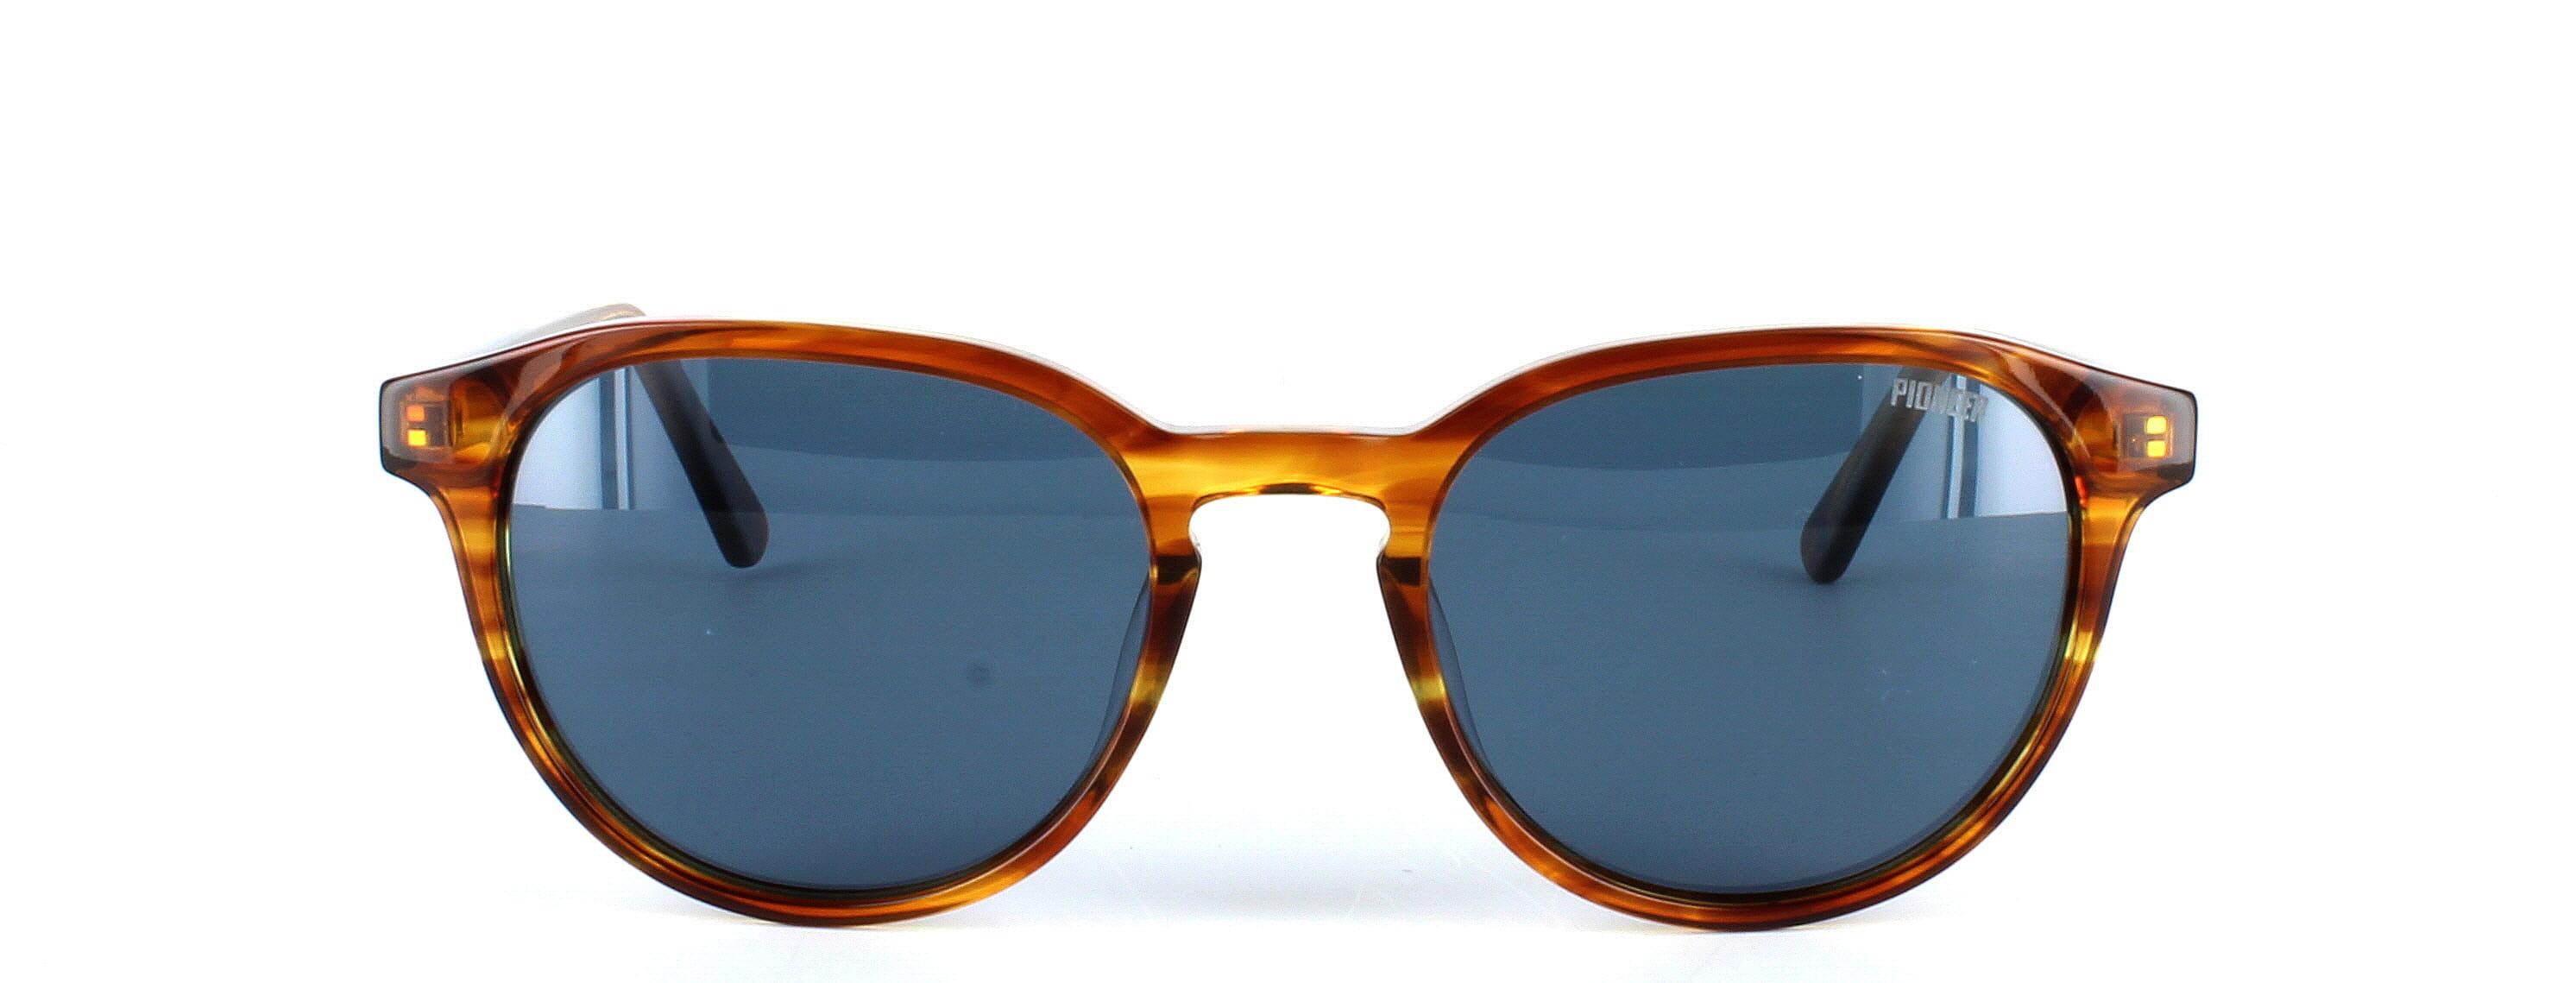 Memphis - Ladies round shaped acetate sunglasses in tortoise - image view 5